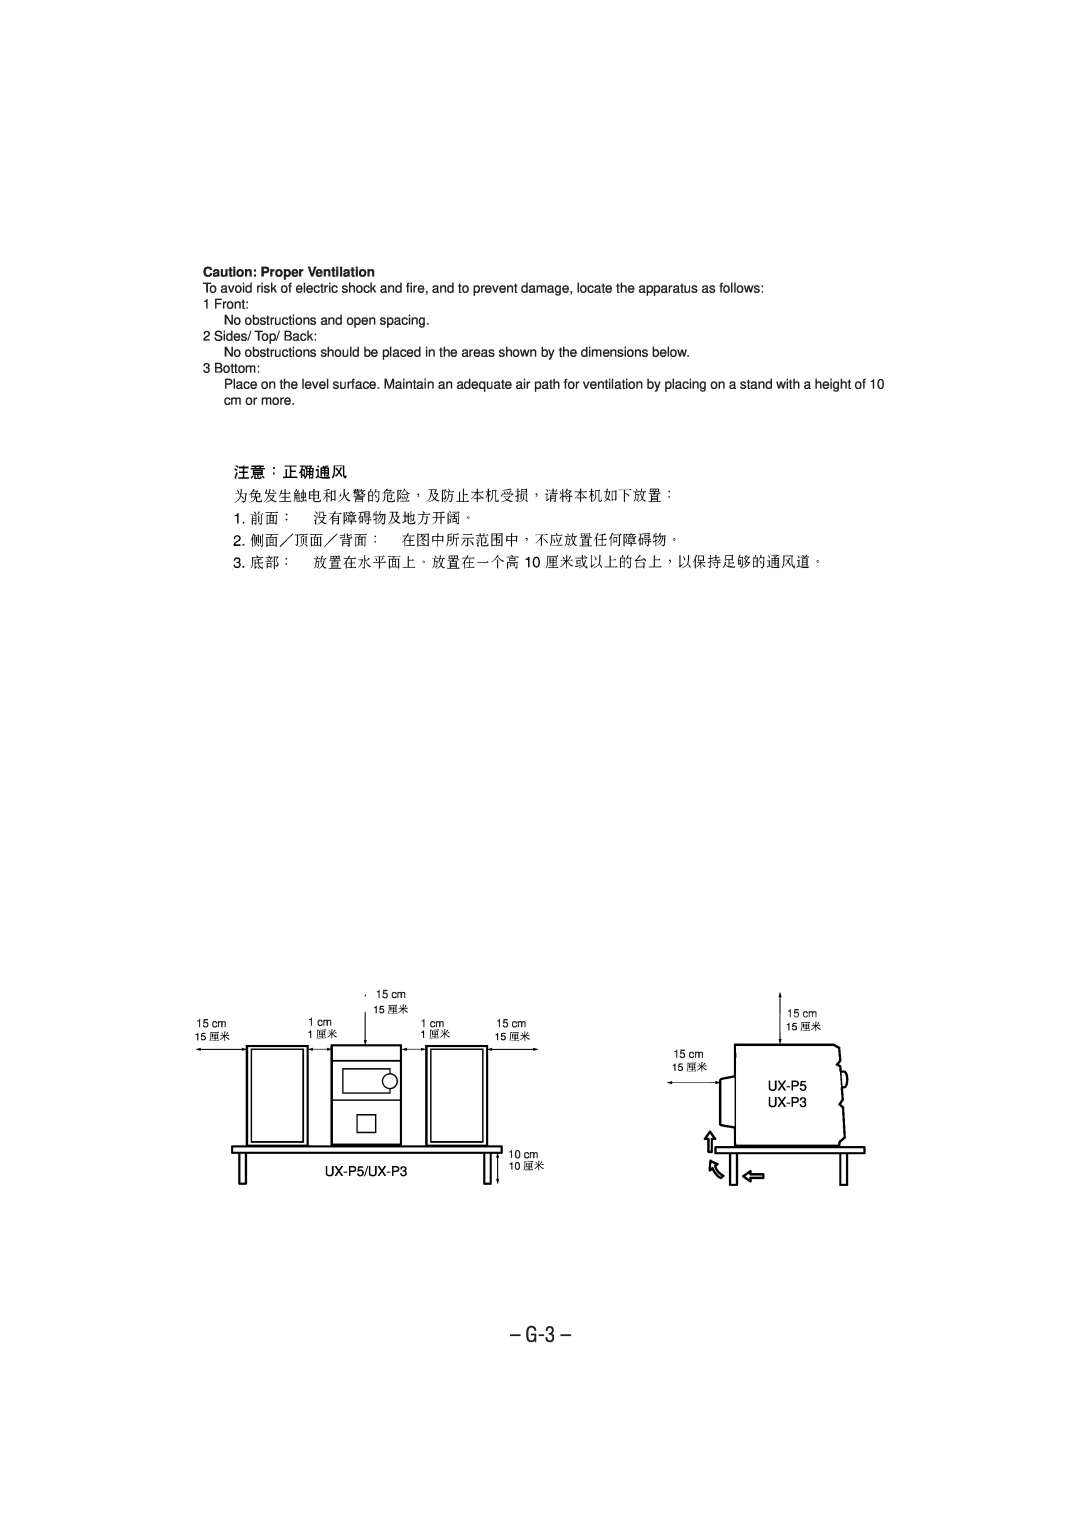 JVC UX-P5/UX-P3 manual G-3, Caution Proper Ventilation 